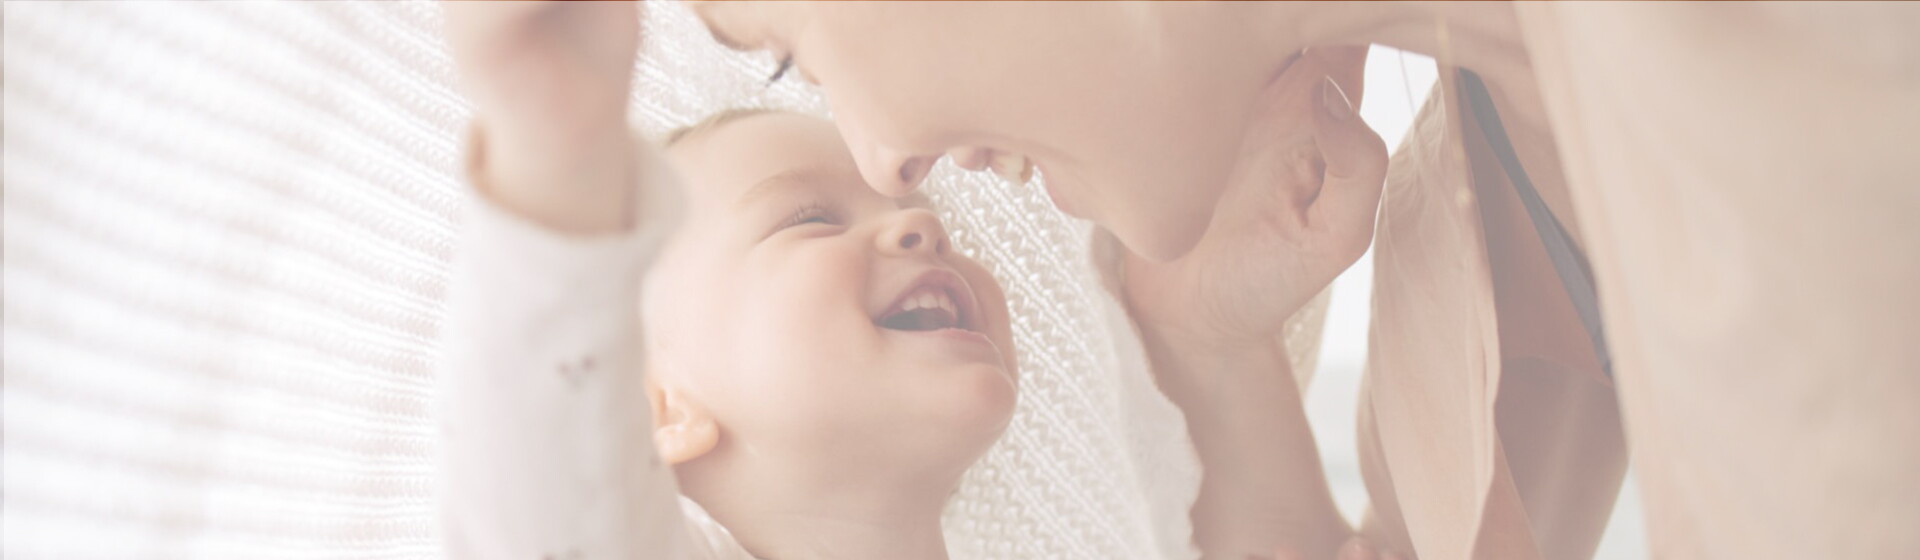 Nestlé Baby & me: De la concepción a los primeros pasos